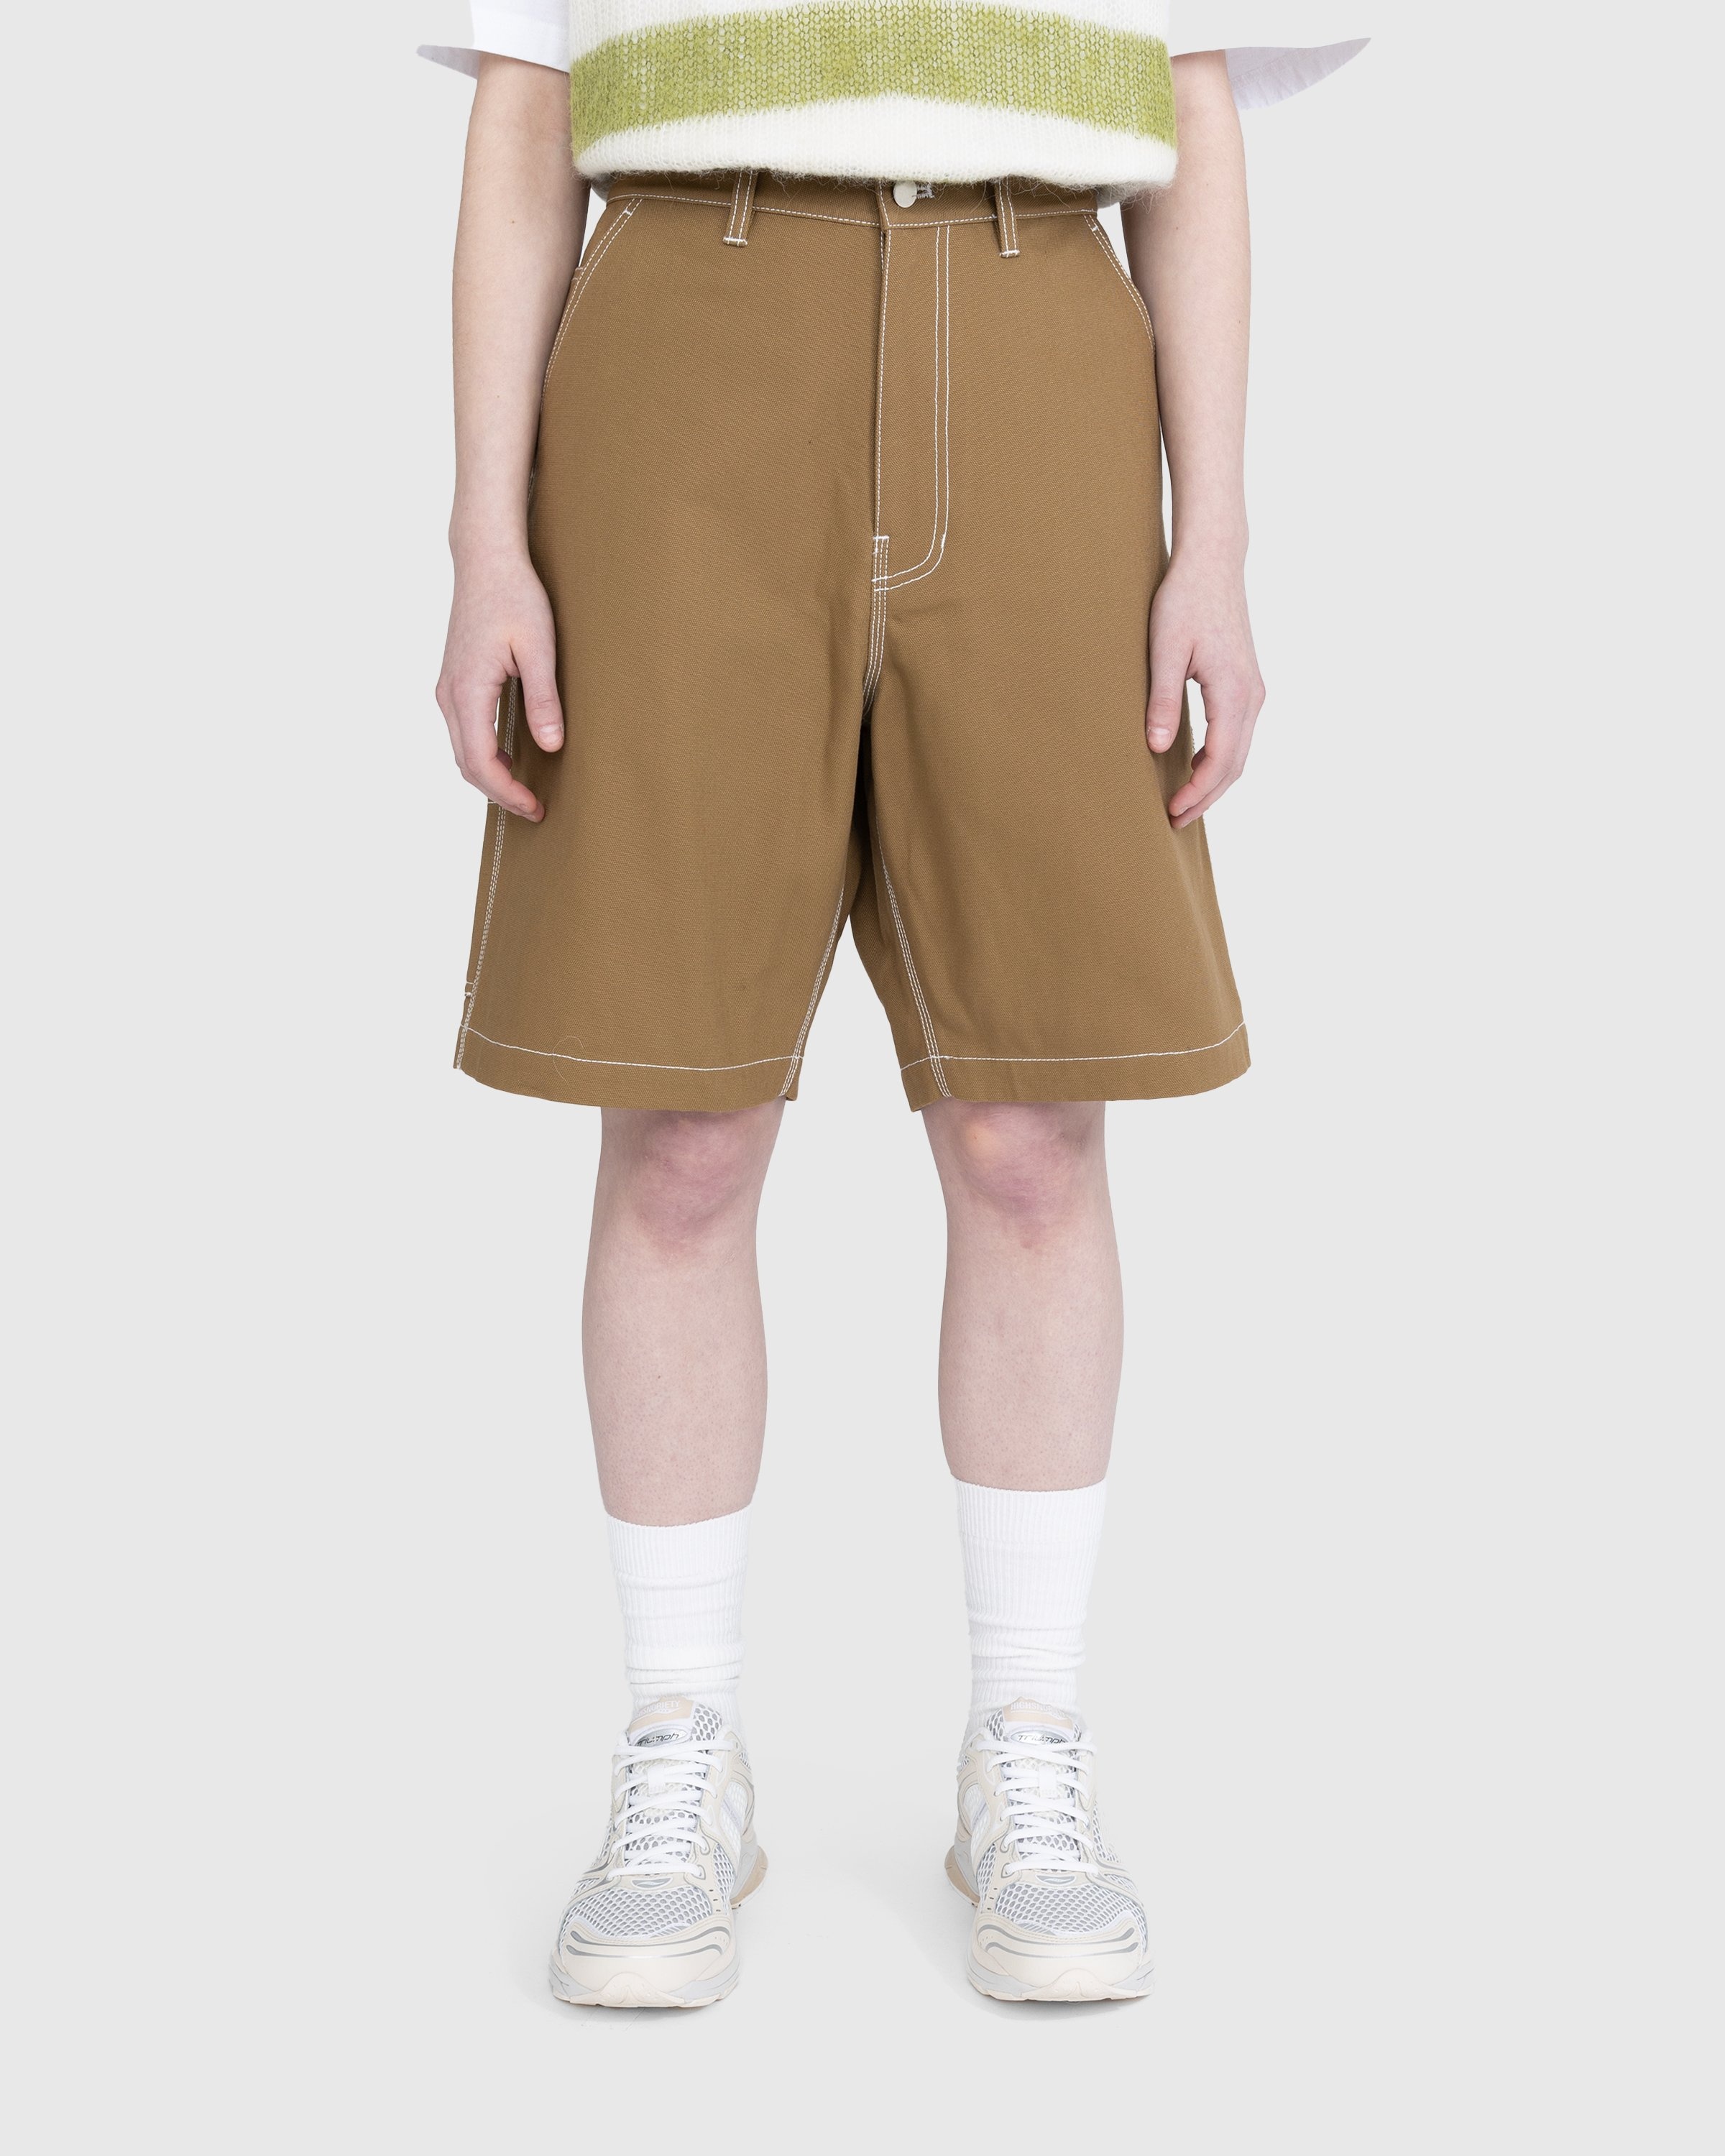 Highsnobiety – Carpenter Shorts Dark Beige - Shorts - Brown - Image 2